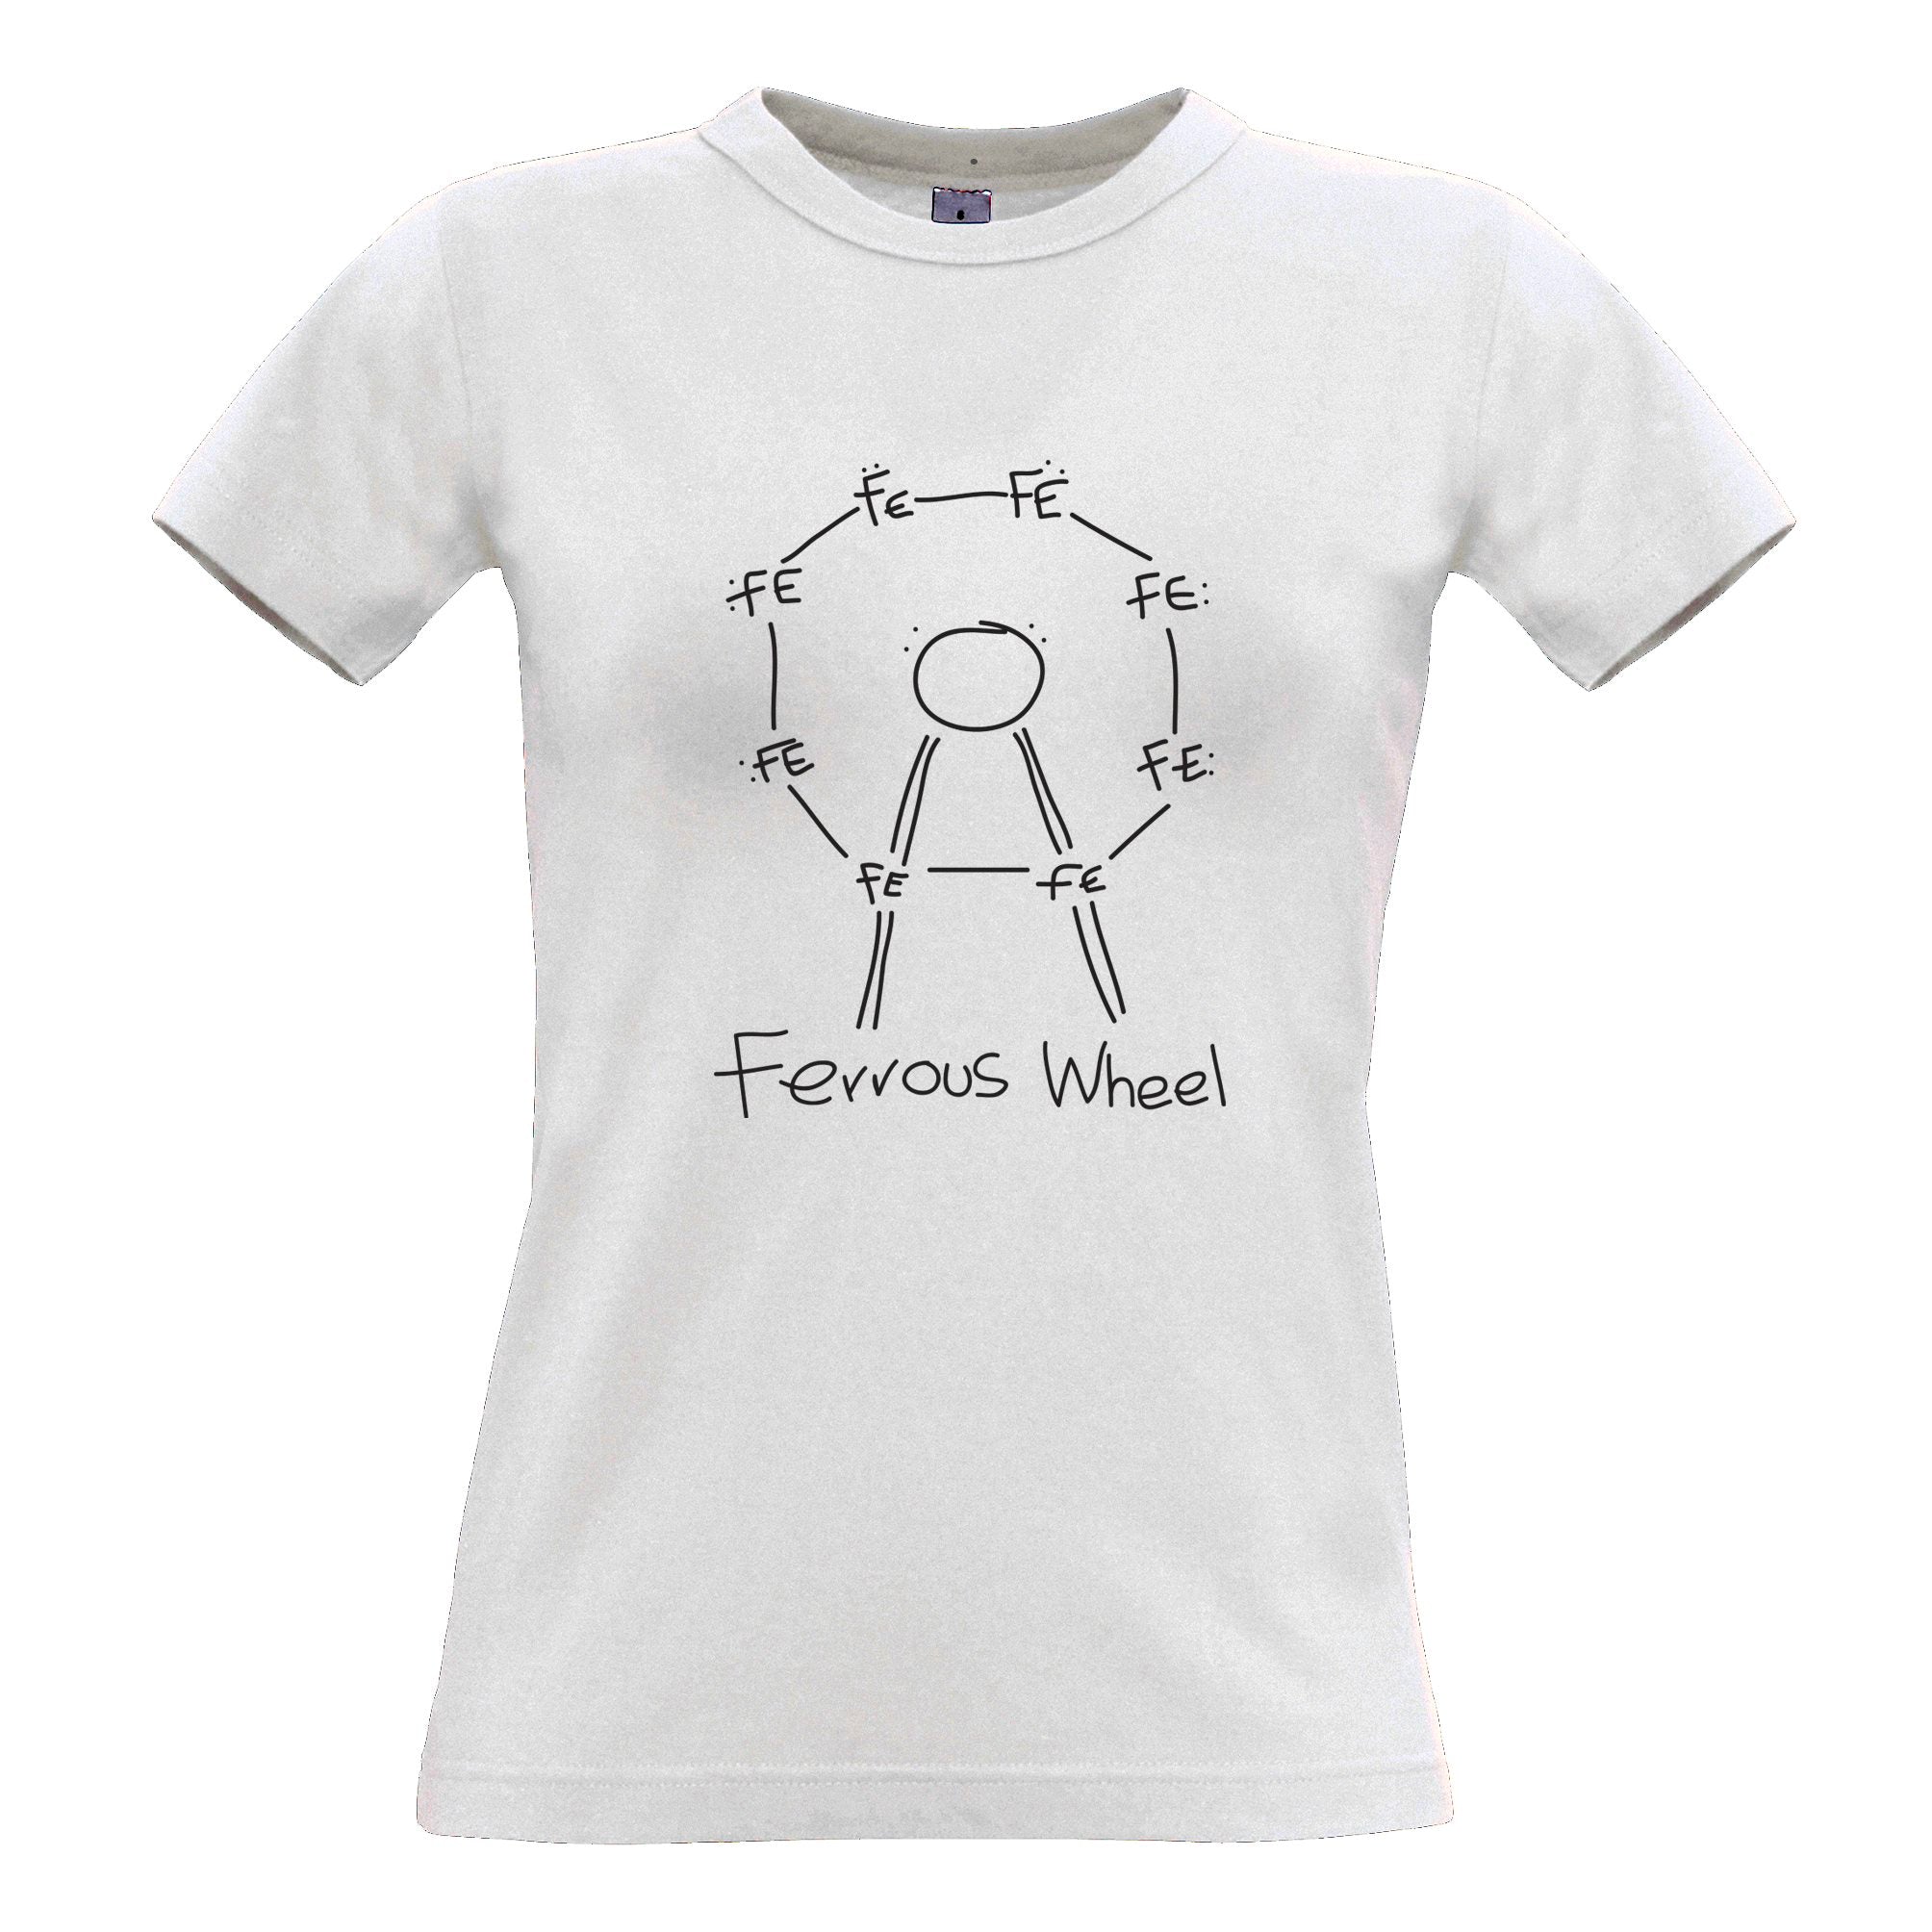 Ferrous Ferris Wheel Science Womens T Shirt